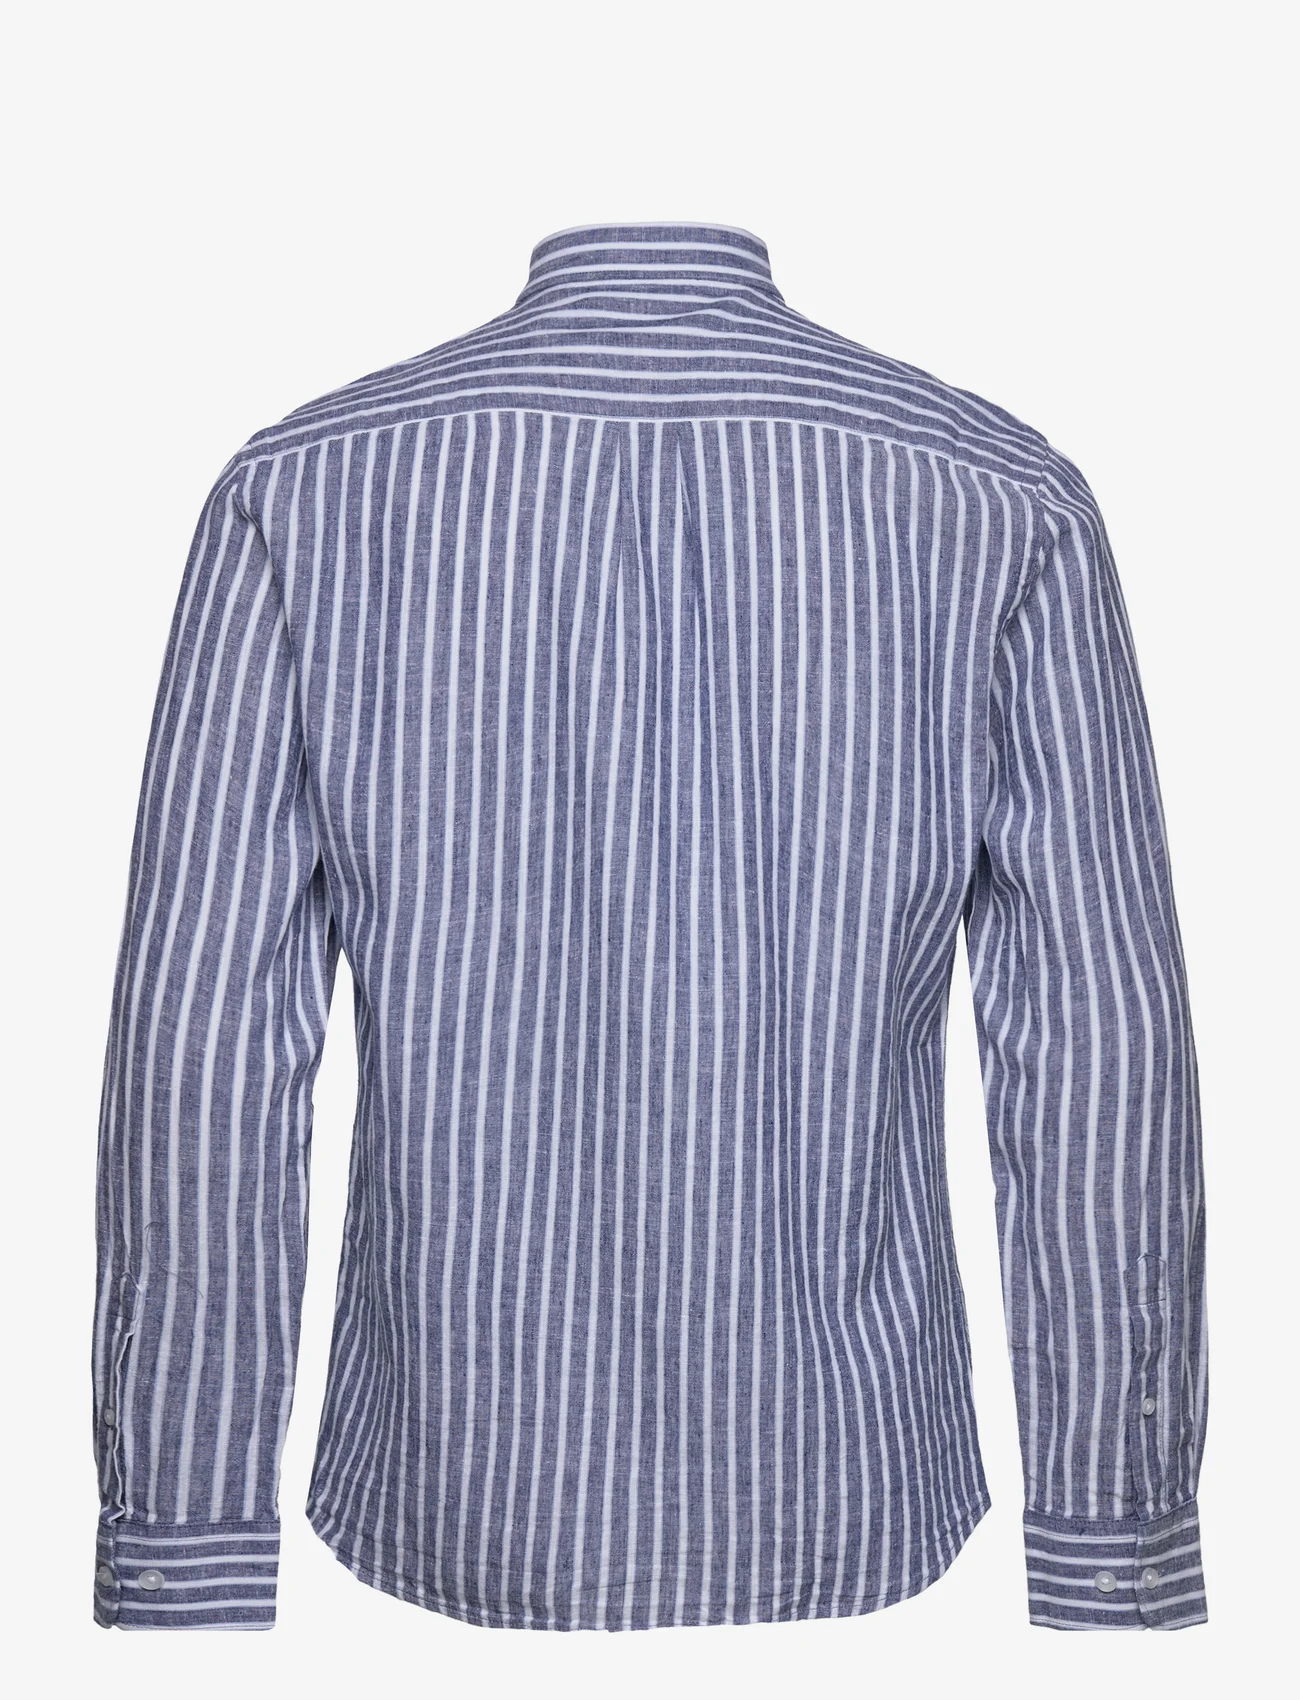 Lindbergh - Striped cotton/linen shirt L/S - linskjorter - navy - 1